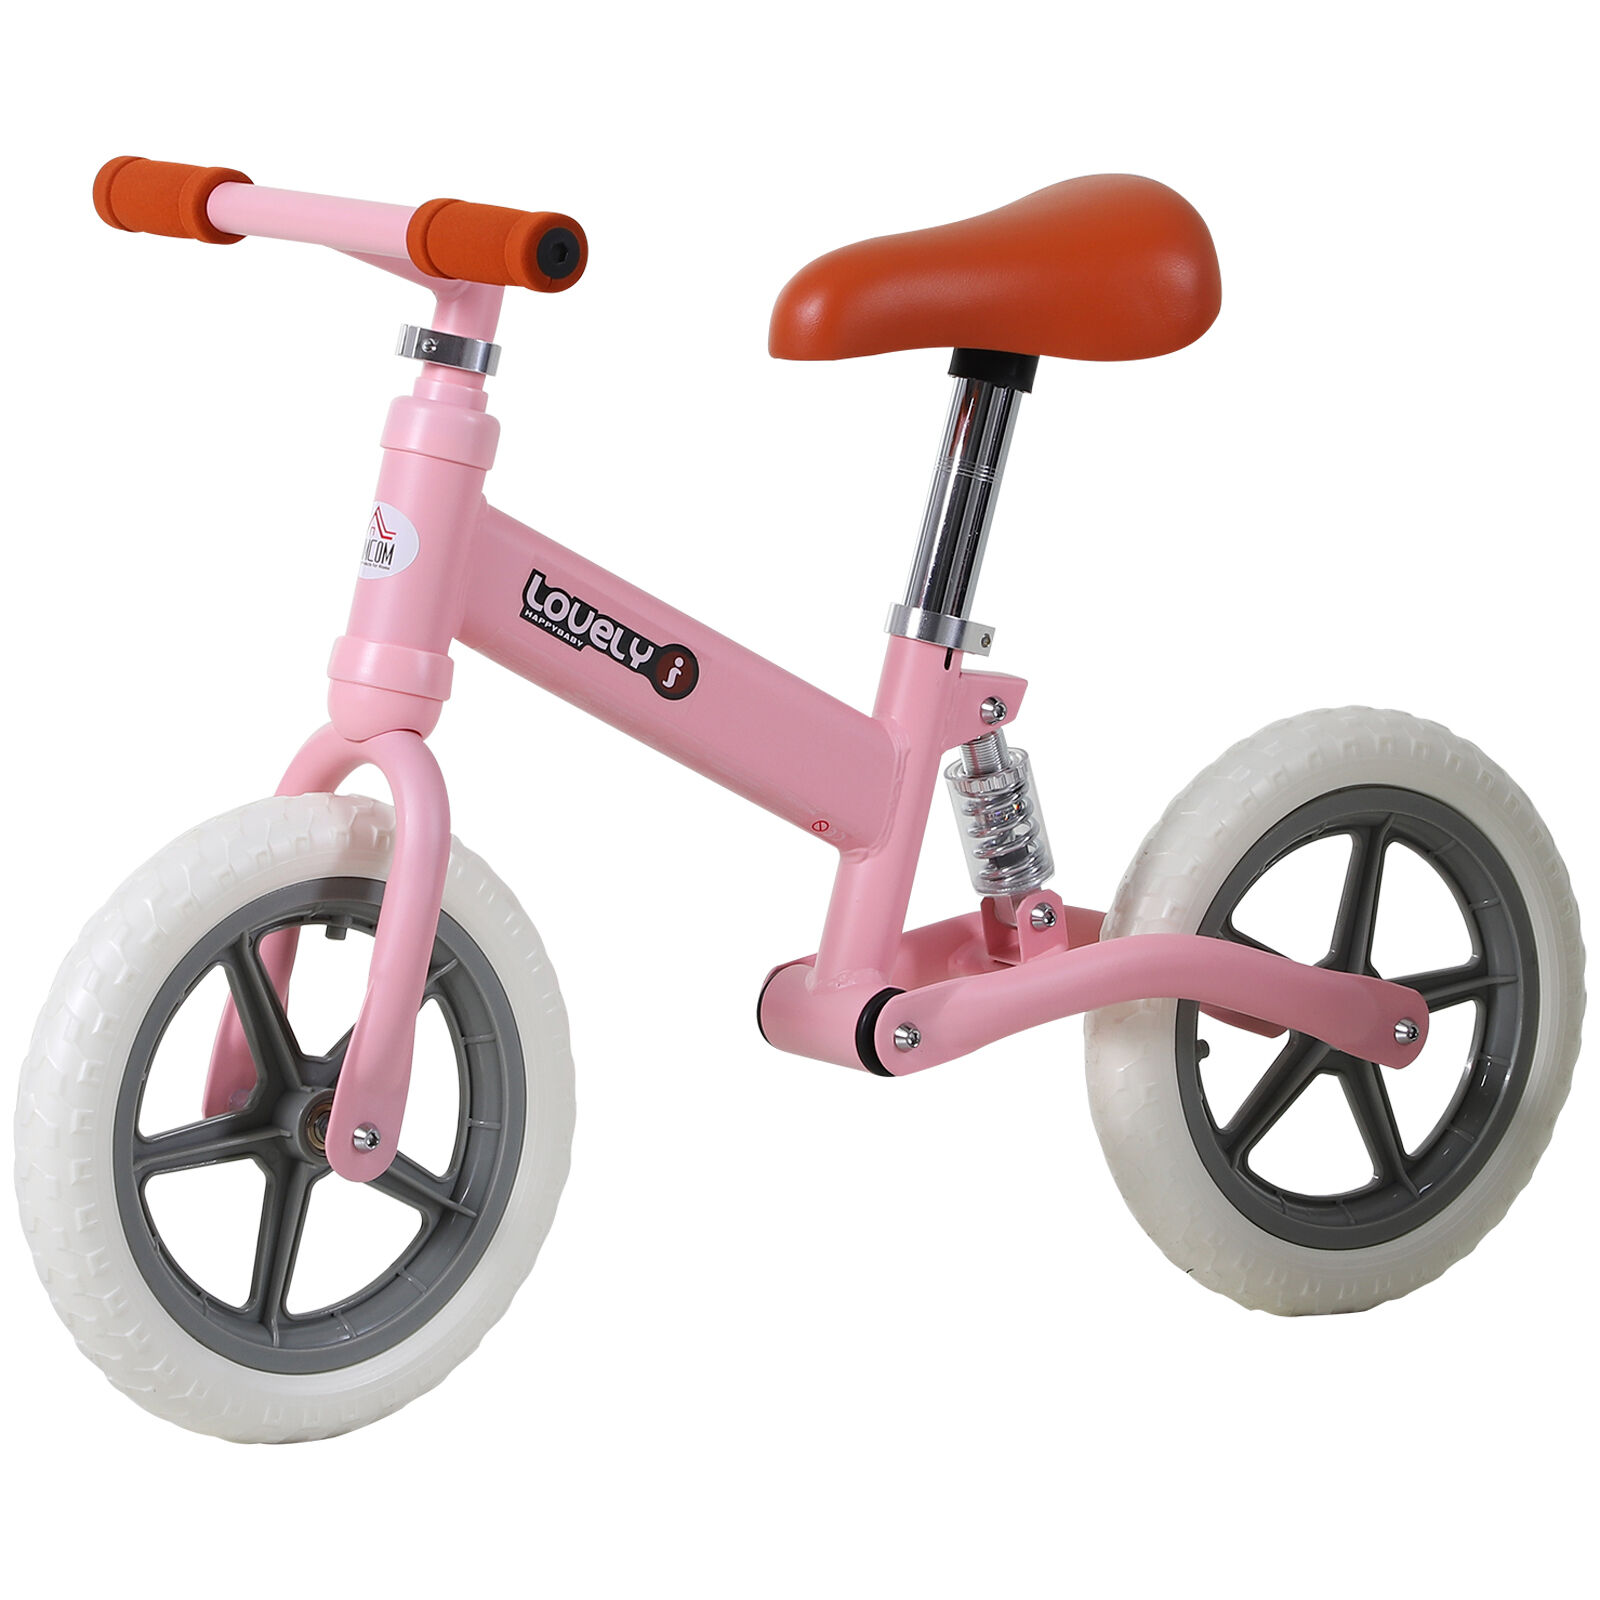 Homcom Bicicleta Sin Pedales para Niños +2 Años Bicicleta Entrenamiento Equilibrio con Sillín Regulable Acolchado Rueda Antideslizante 85x36x54 cm